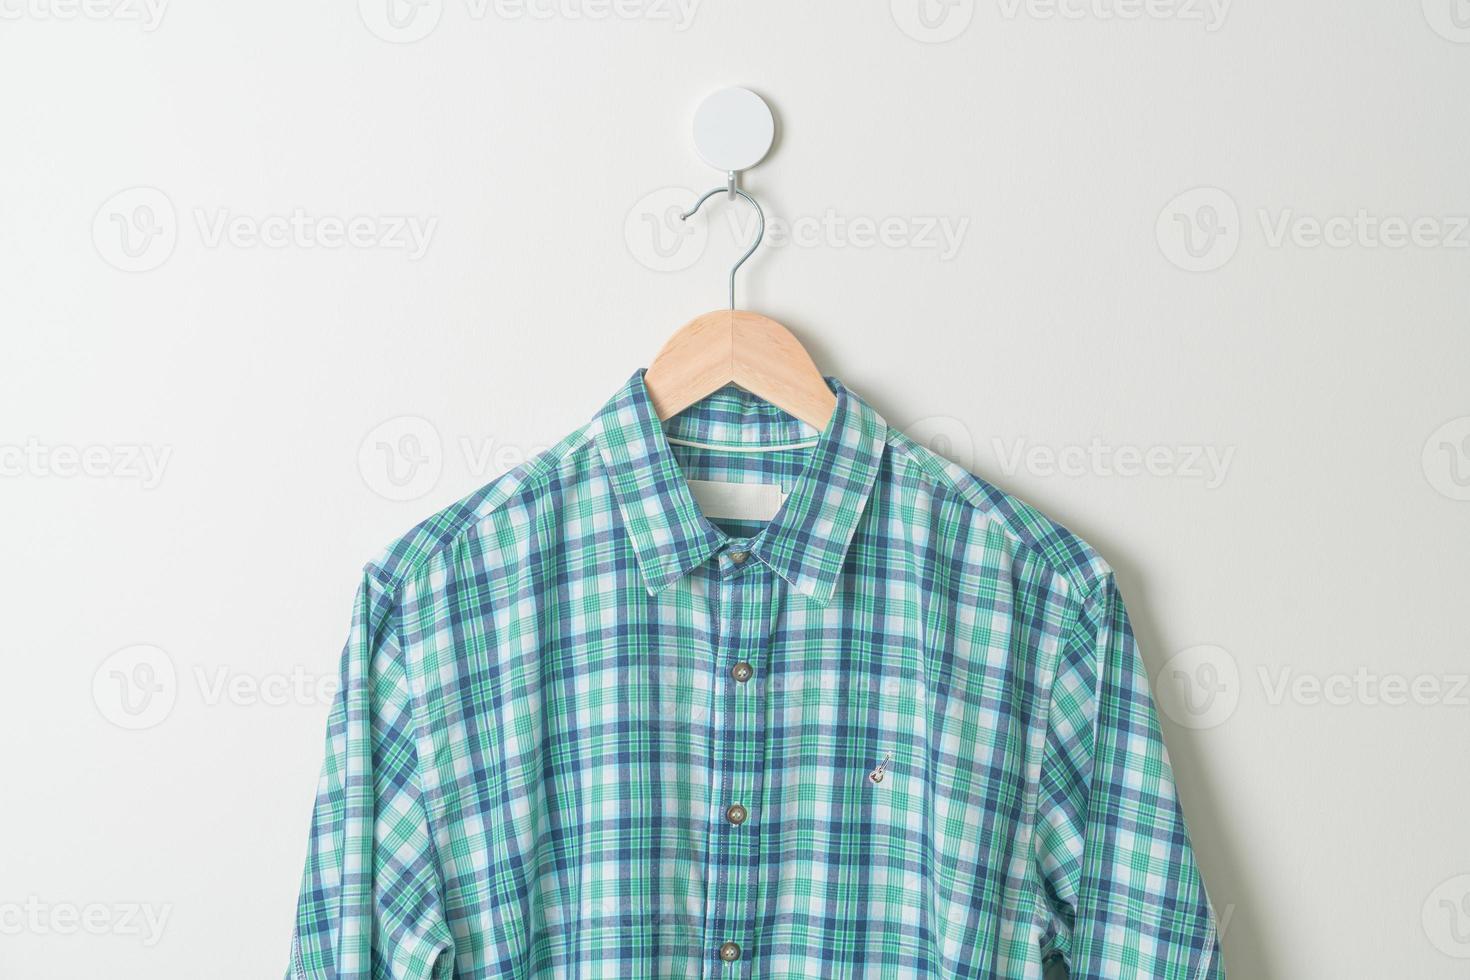 chemise suspendue avec cintre en bois au mur photo